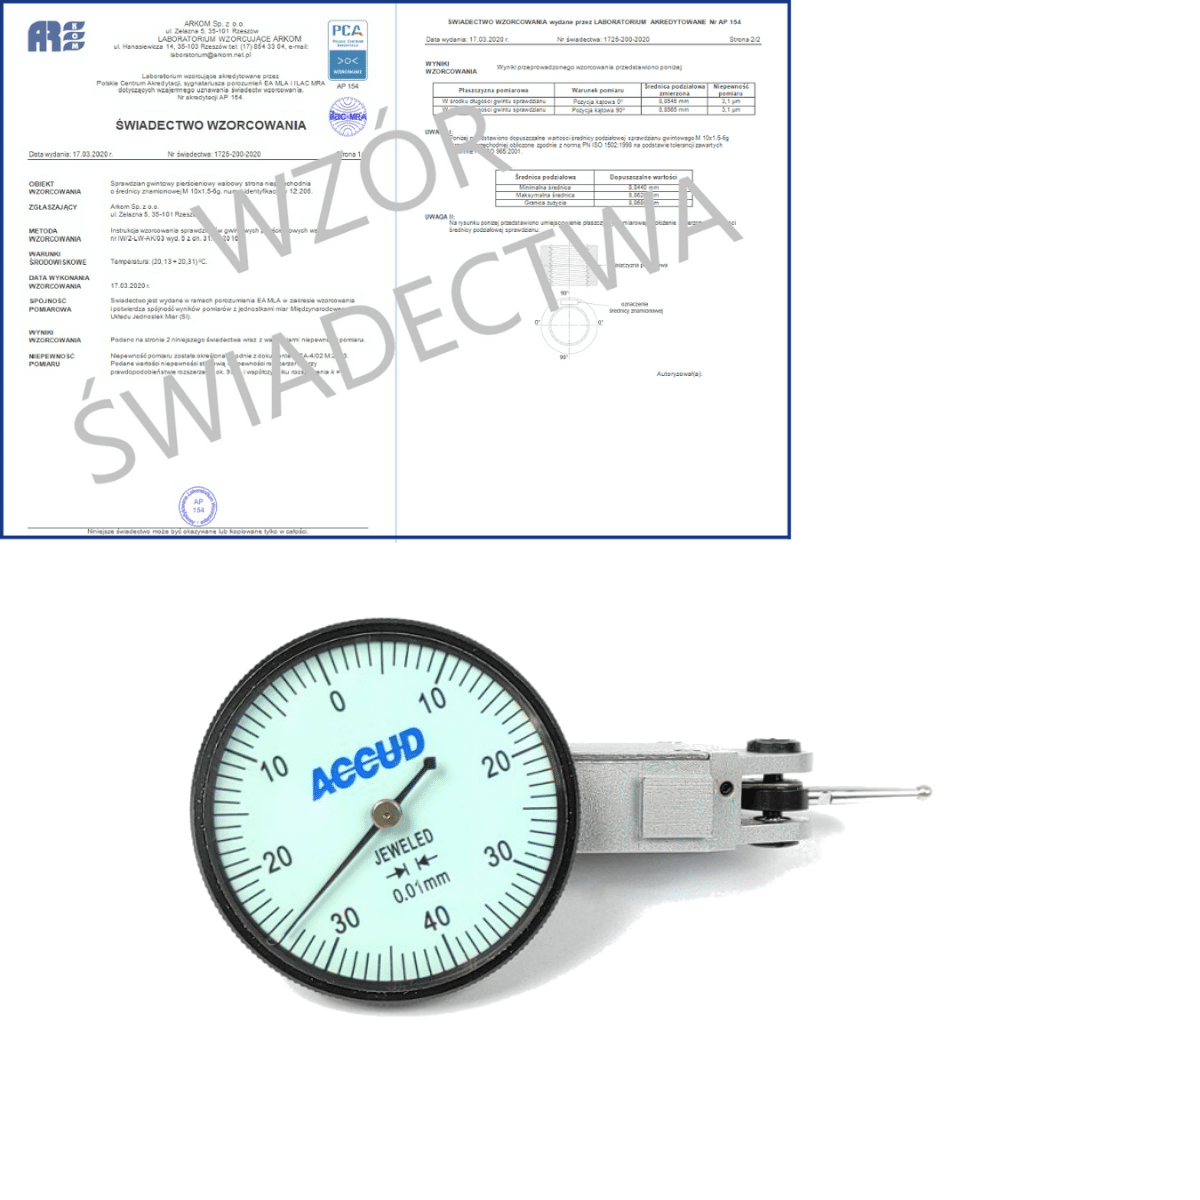 ACCUD czujnik dźwigniowo-zębaty poziomy 0-0.08/0.01mm + świadectwo wzorcowania PCA 261-008-12 WZORC